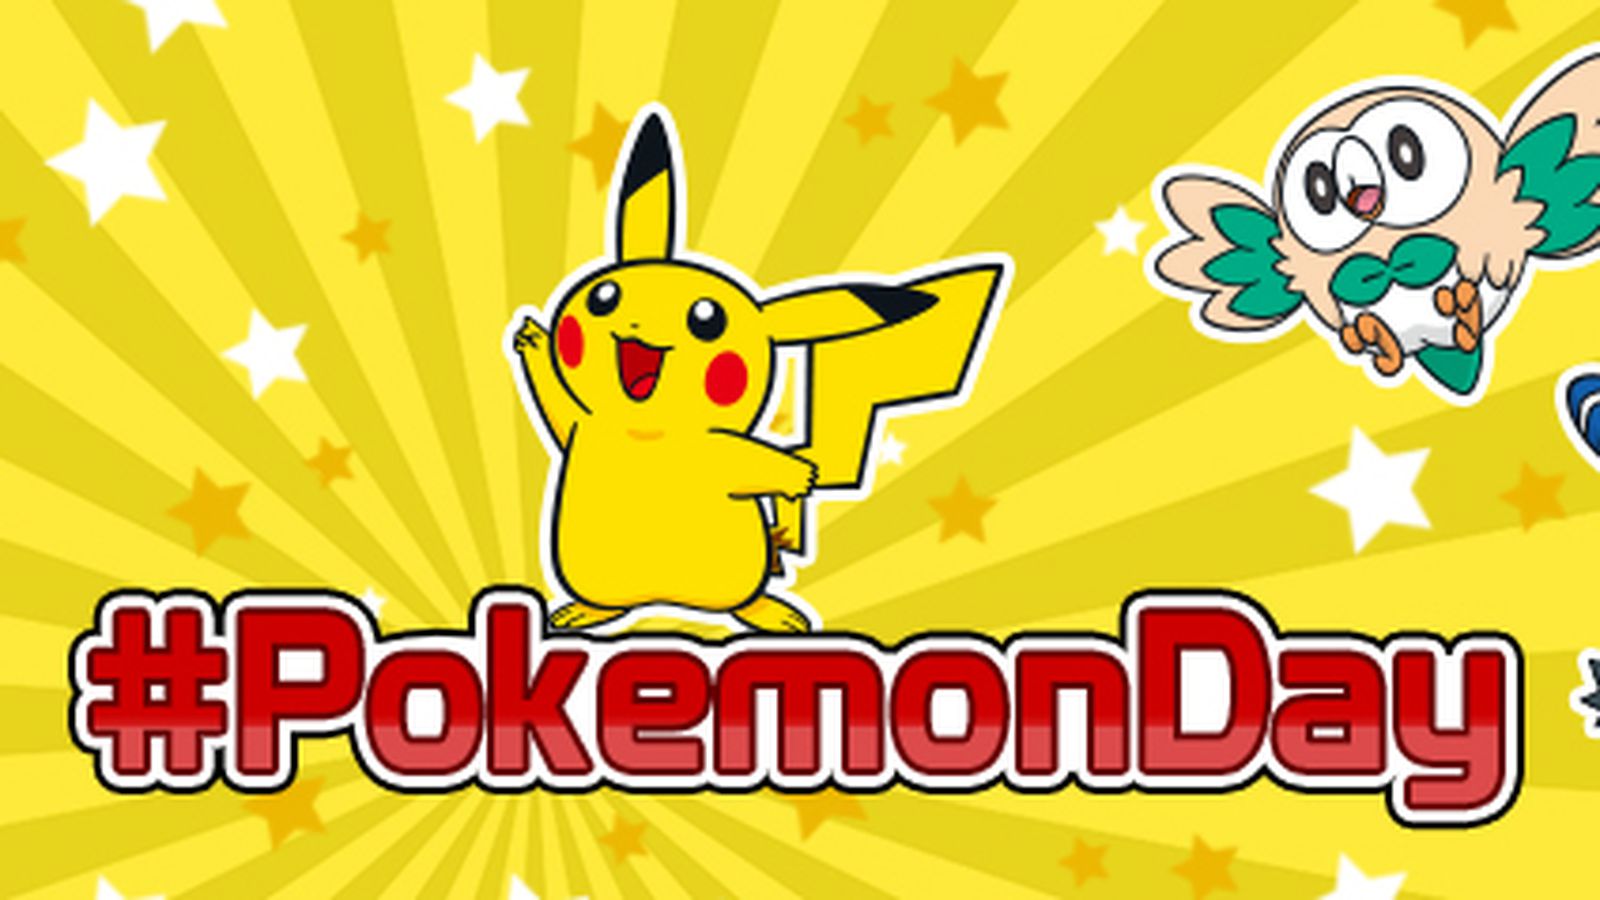 27 февраля день покемона. День покемона 27 февраля. Покемонов день. Открытка с днем покемона. 27 Февраля день покемона (Pokemon Day).